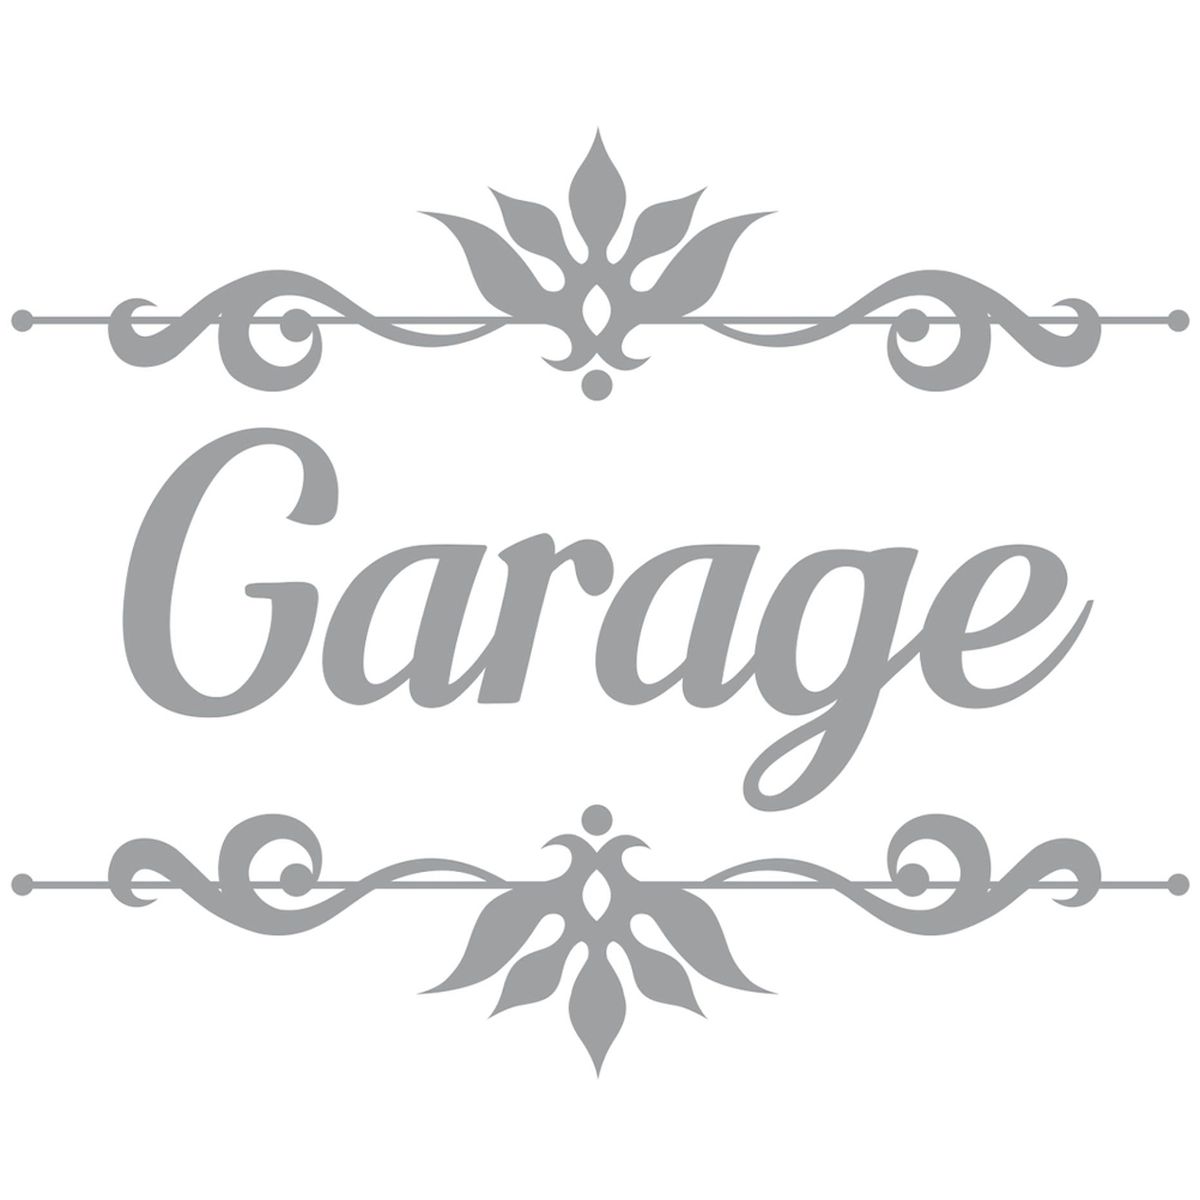 Sticker de porte - Garage